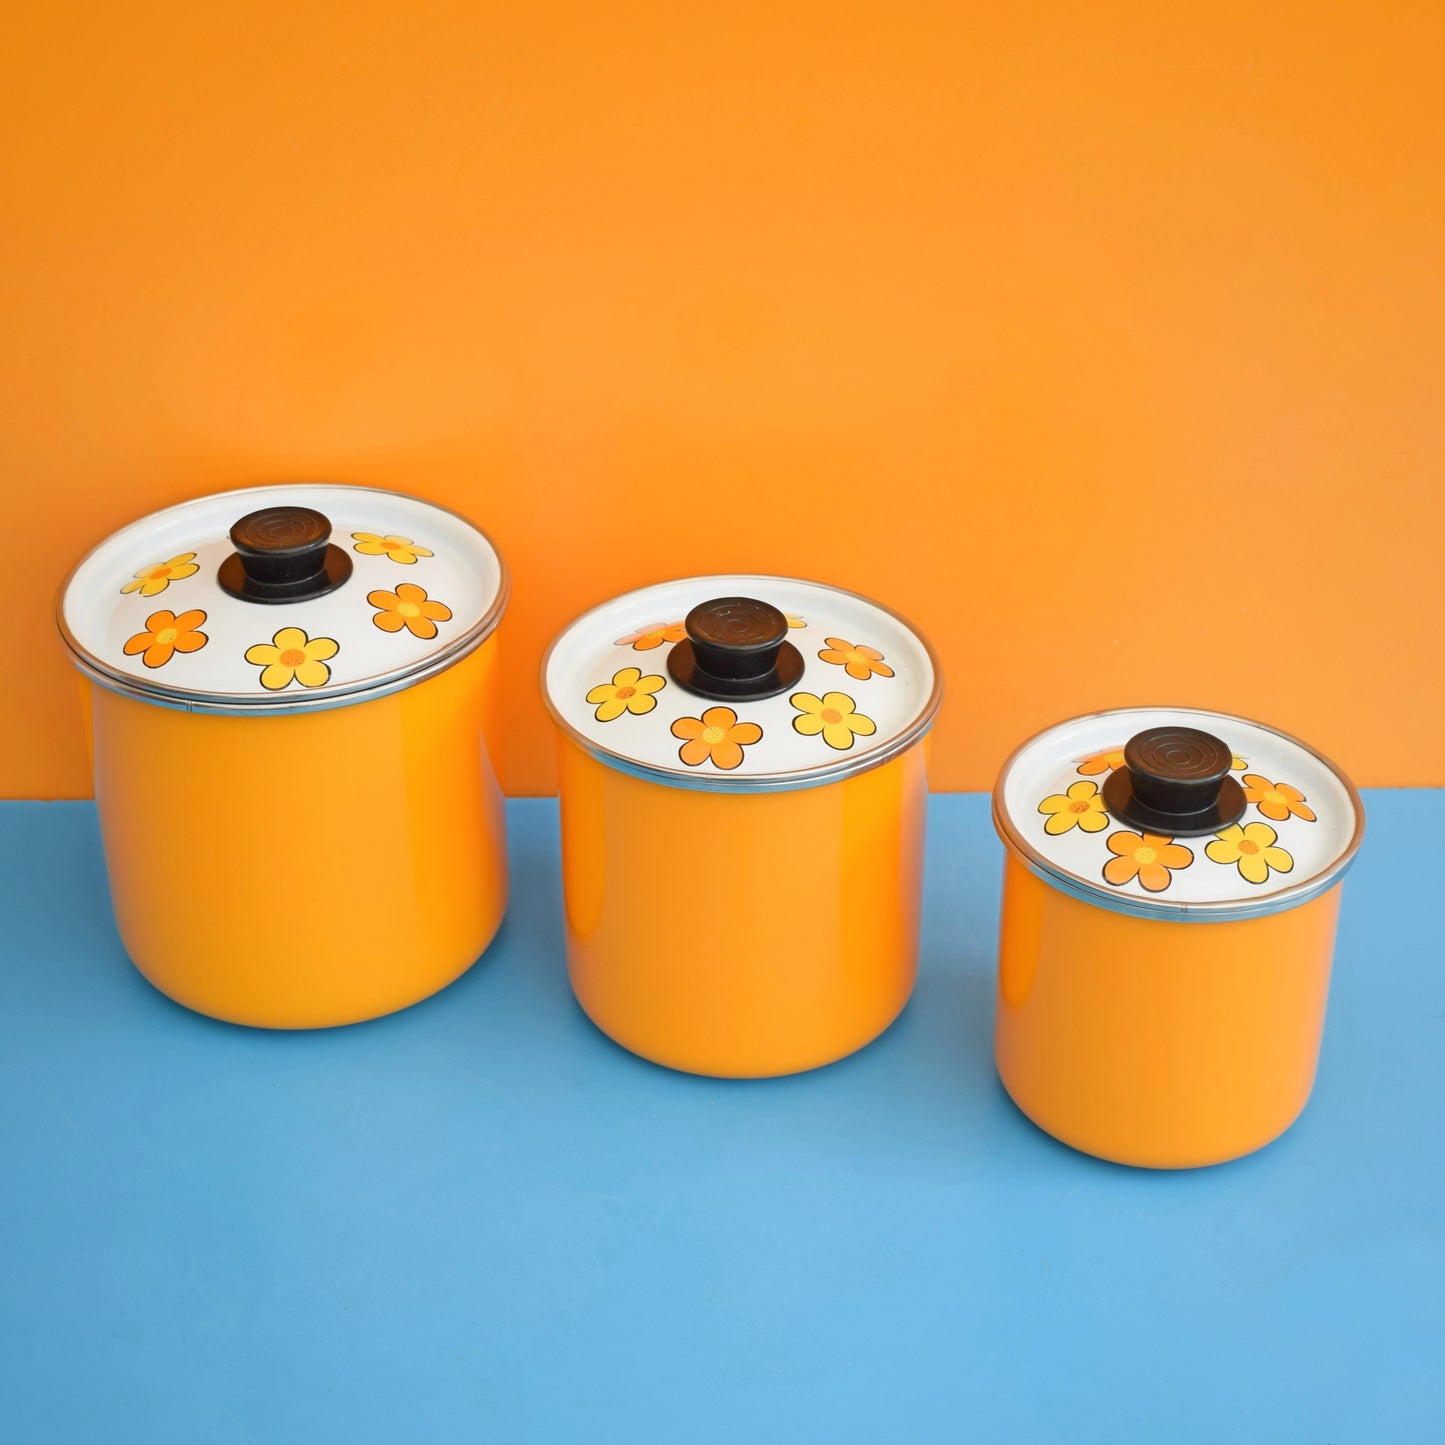 Vintage 1960s Flower Power Enamelled Storage Tins x3 - Yellow & Orange